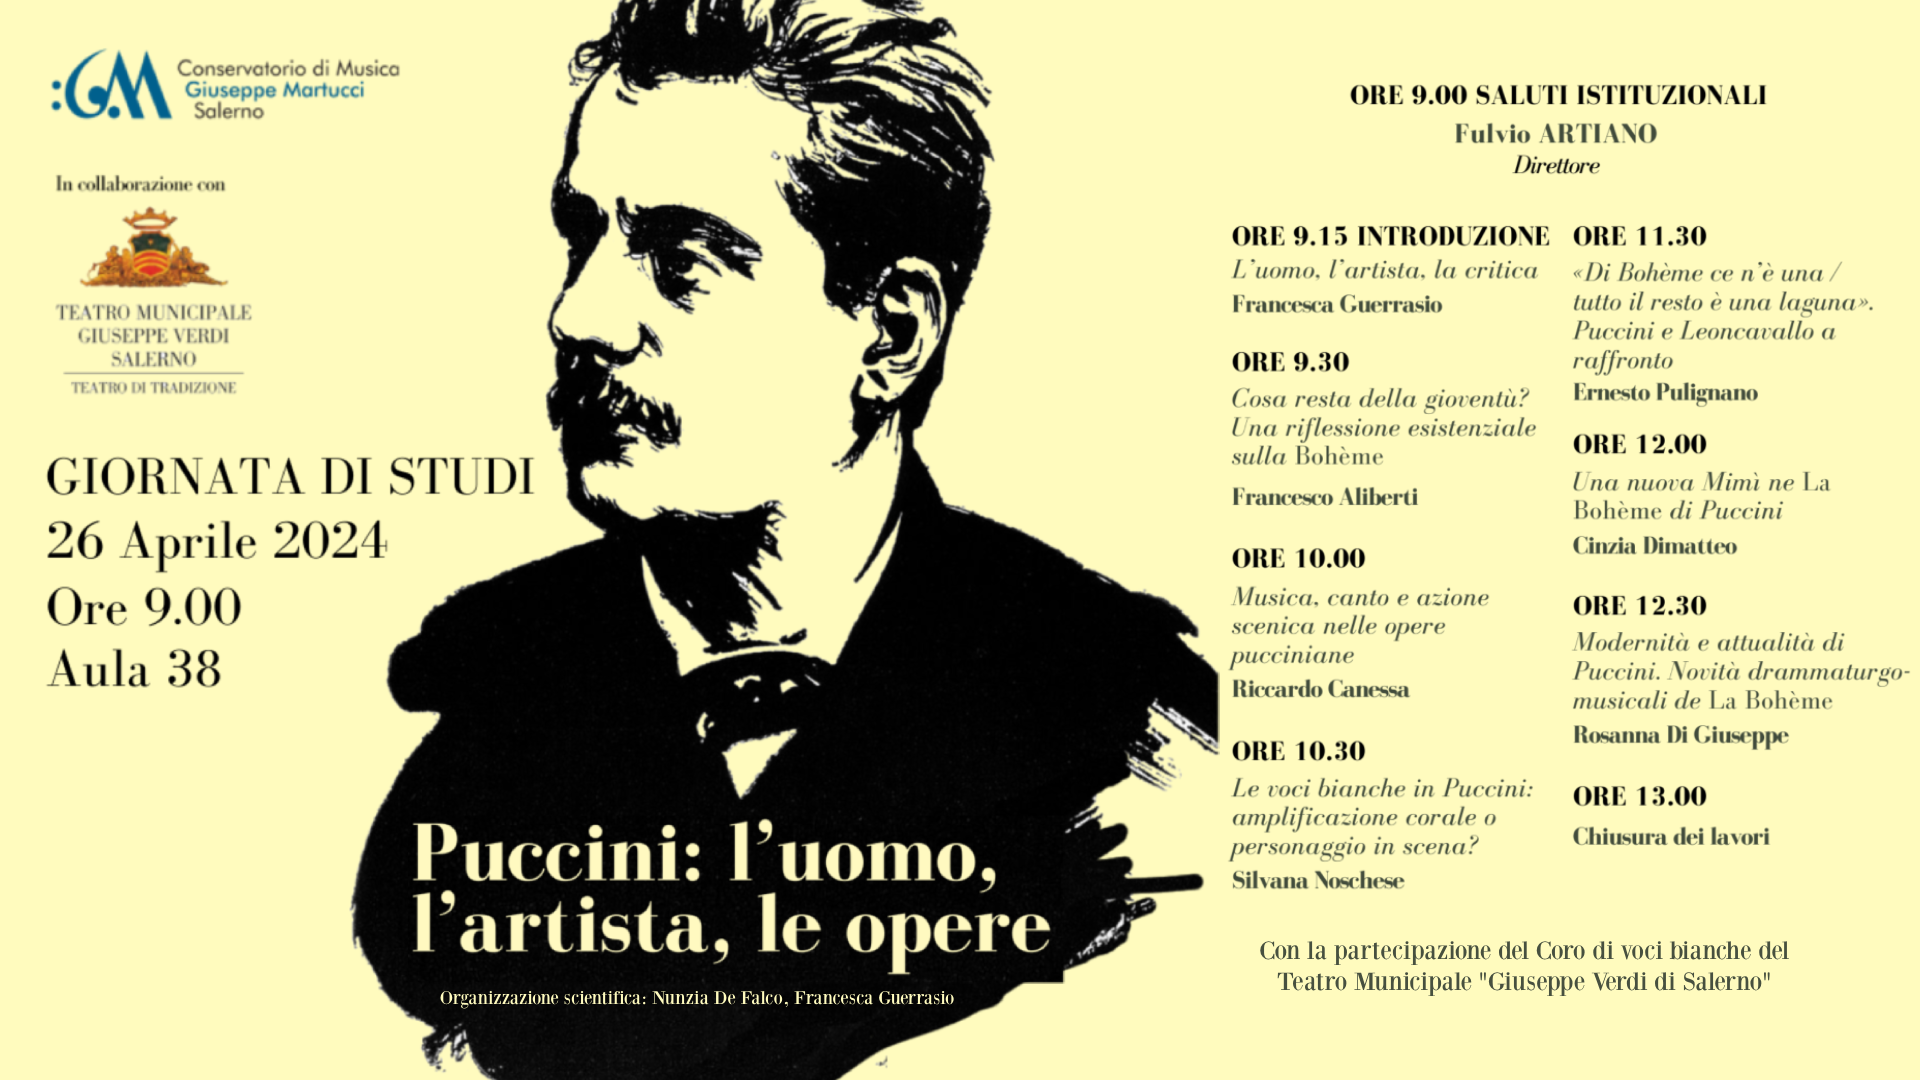 Puccini: l'uomo, l'artista, le opere